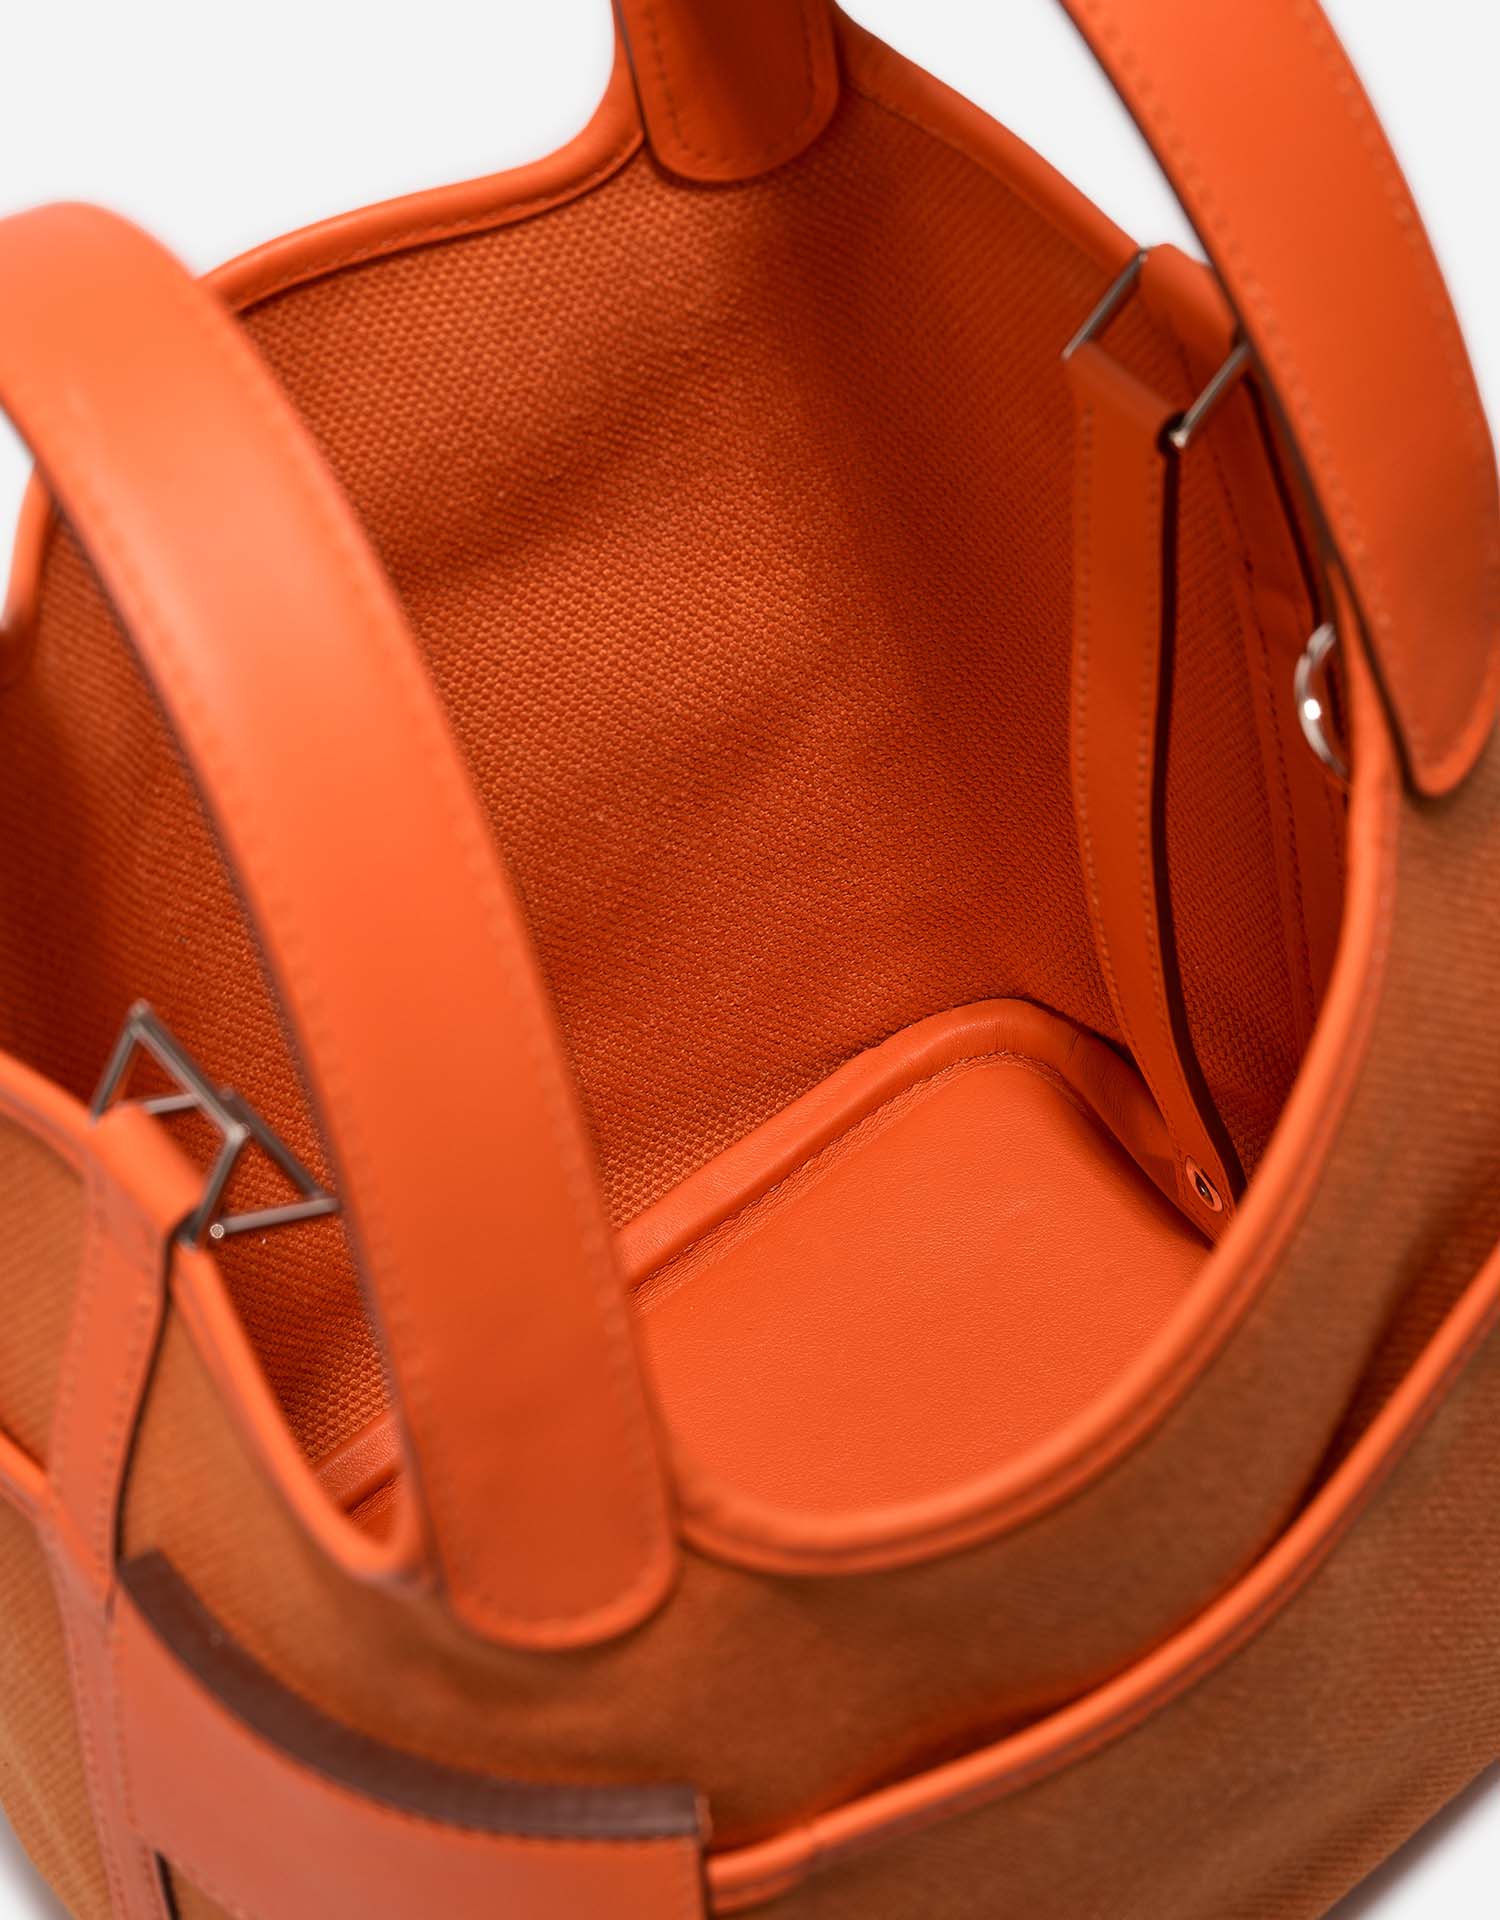 Hermès Picotin 18 OrangeMinium Innenseite | Verkaufen Sie Ihre Designertasche auf Saclab.com